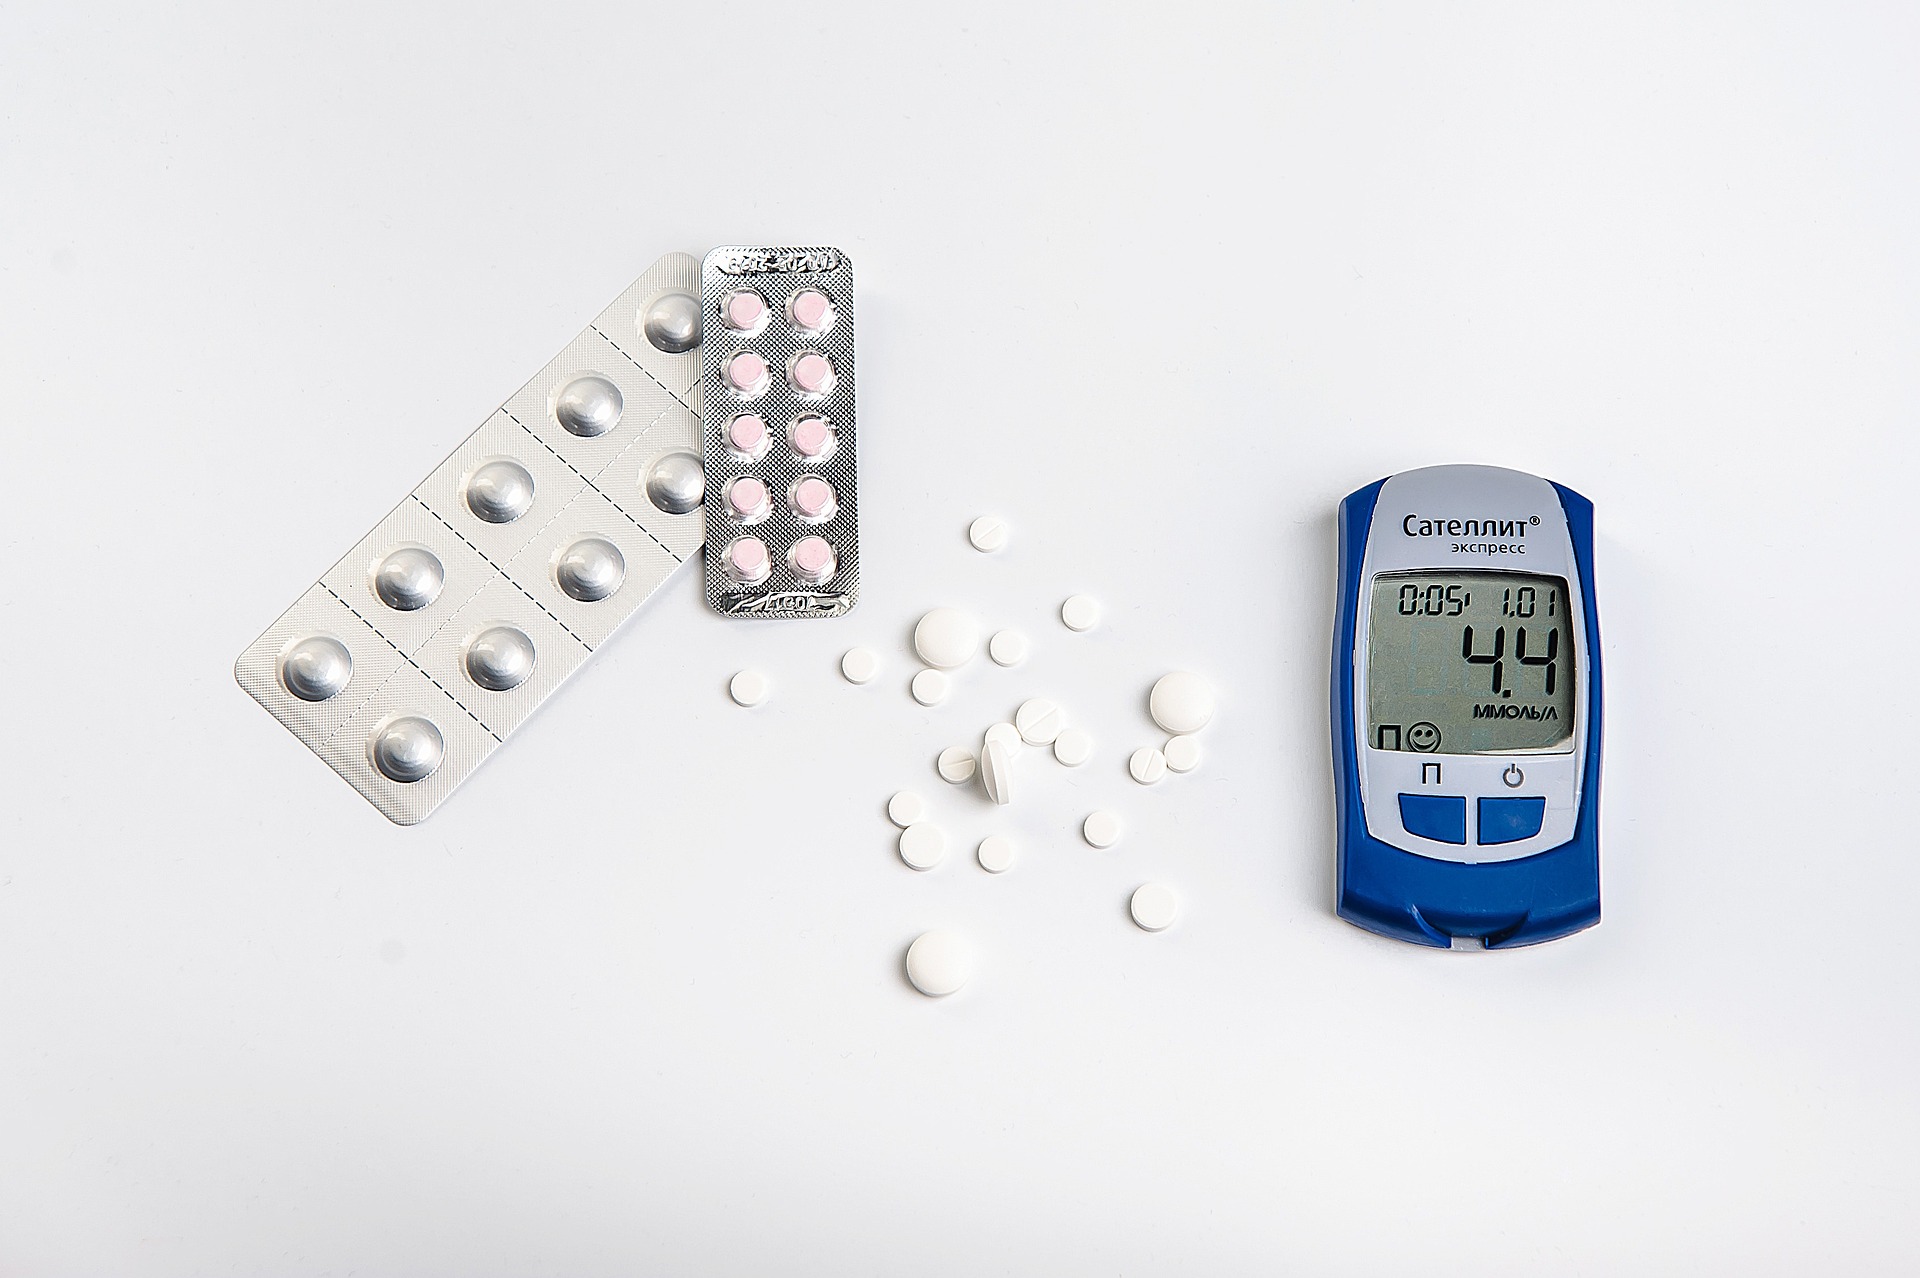 Medicatie tegen diabetes blijkt ook effectief in de strijd tegen IIH pijnbestrijding.